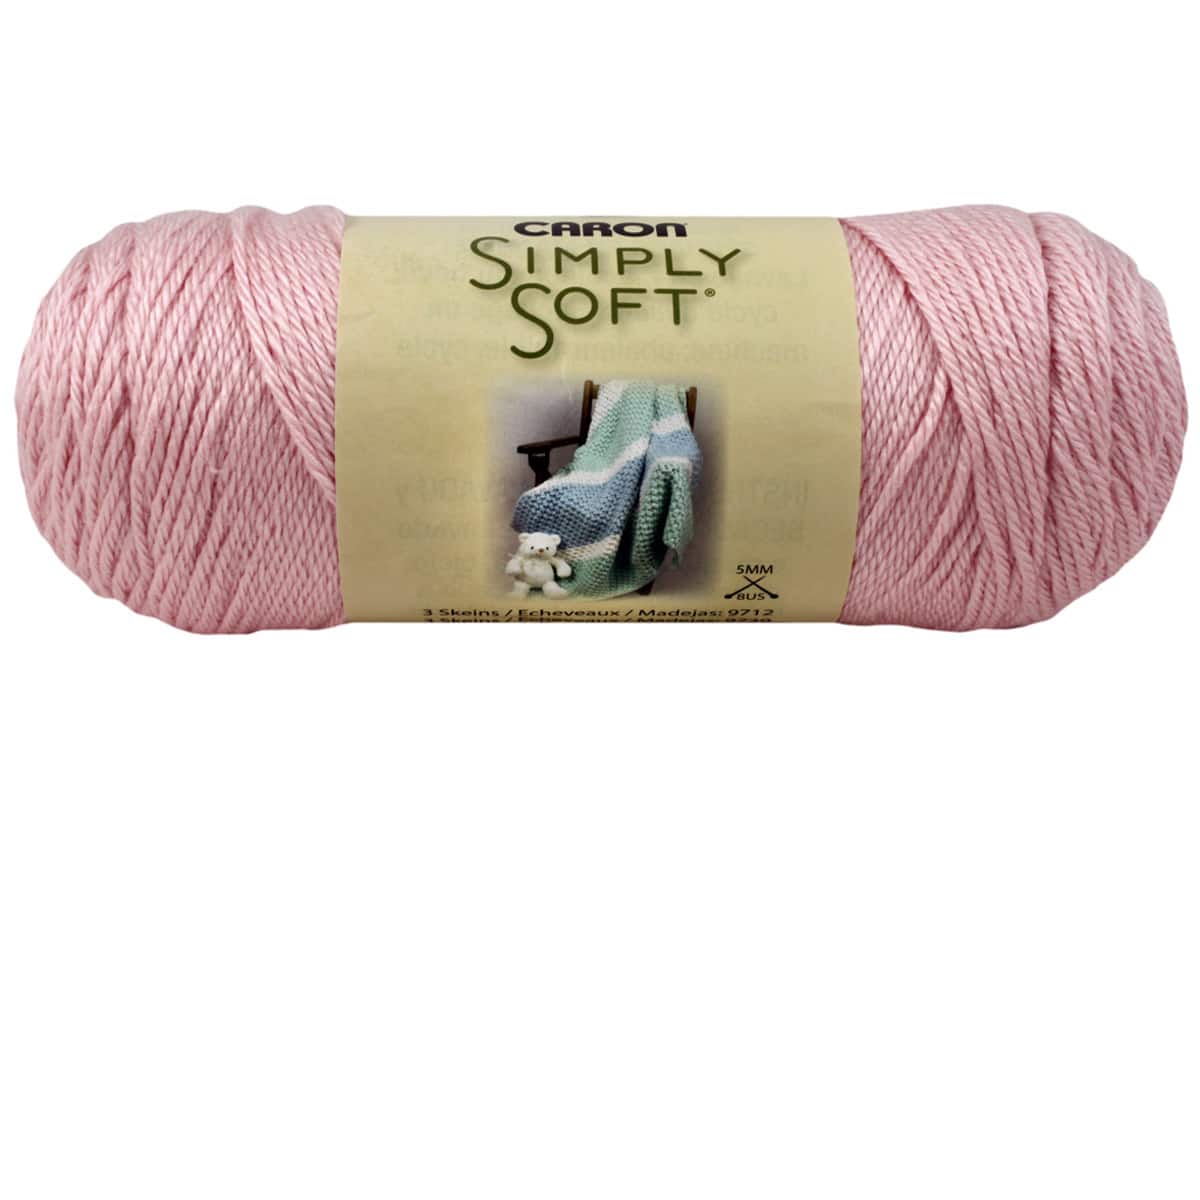 PAGODA SIMPLY SOFT by Caron Yarn, Green-blue Yarn, 4 Weight Yarn, Acrylic  Yarn, for Knitting, for Crocheting, for Crafting, Garments, Yarn 